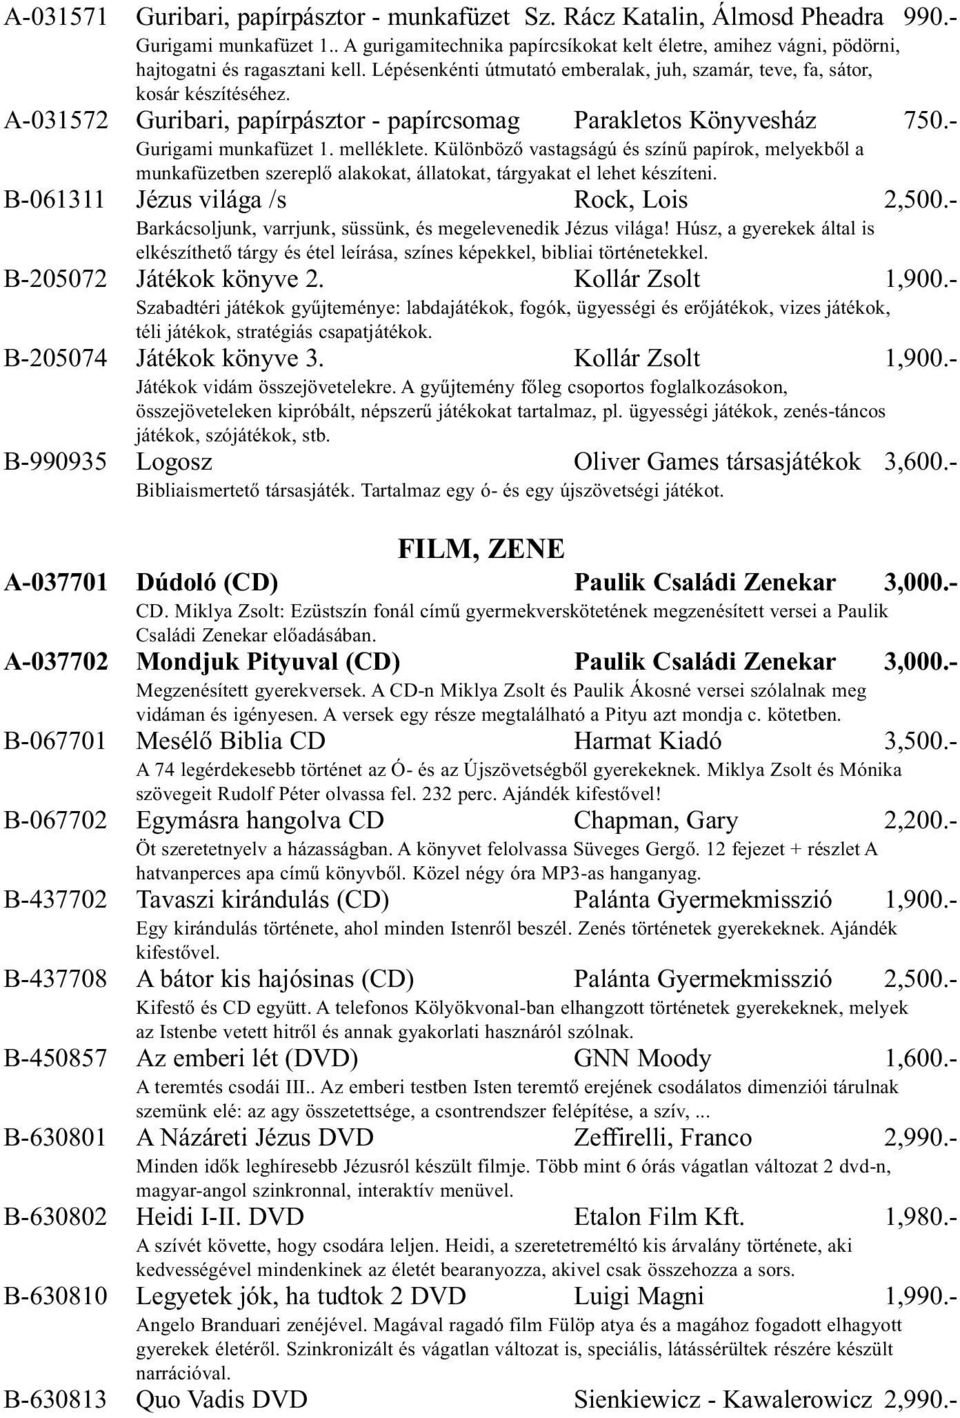 A-031572 Guribari, papírpásztor - papírcsomag Parakletos Könyvesház 750.- Gurigami munkafüzet 1. melléklete.